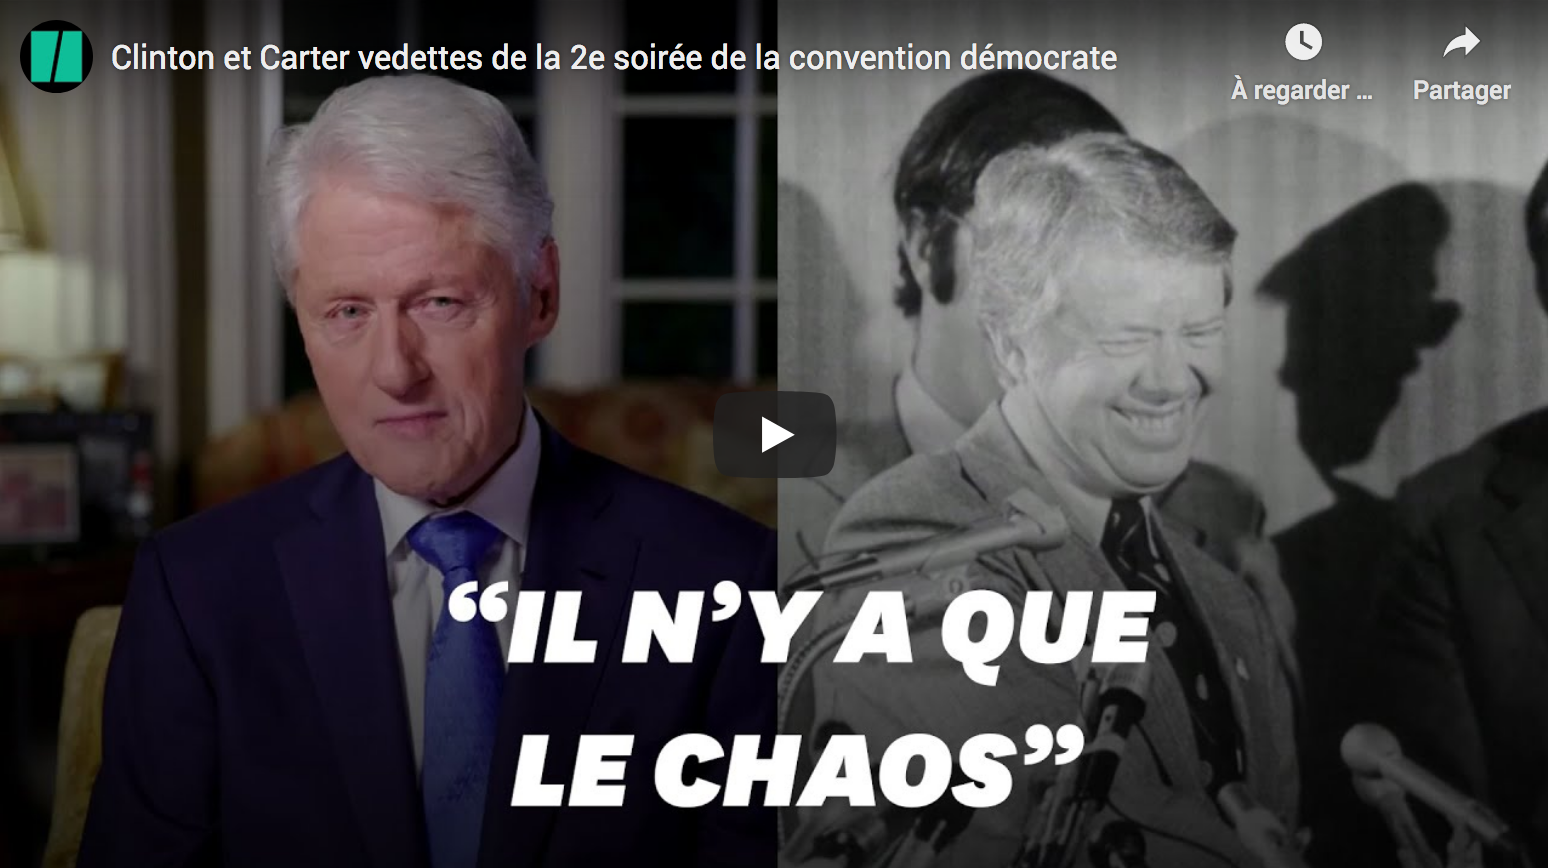 Les vieux boomers de sortie : Clinton et Carter vedettes de la 2e soirée de la convention démocrate